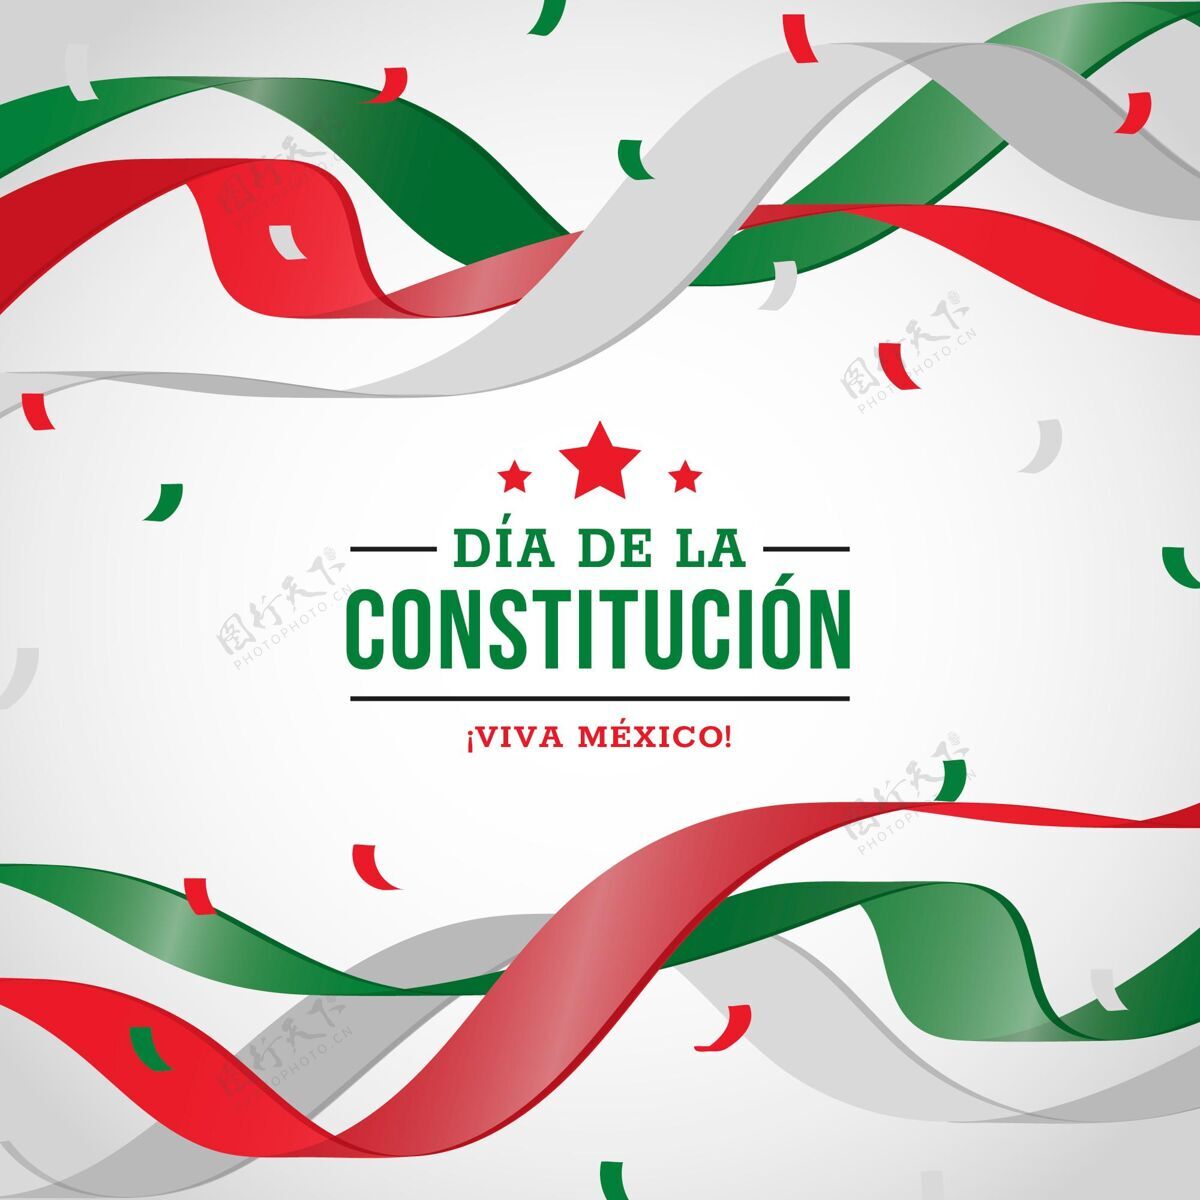 节日墨西哥宪法日民主权利国家